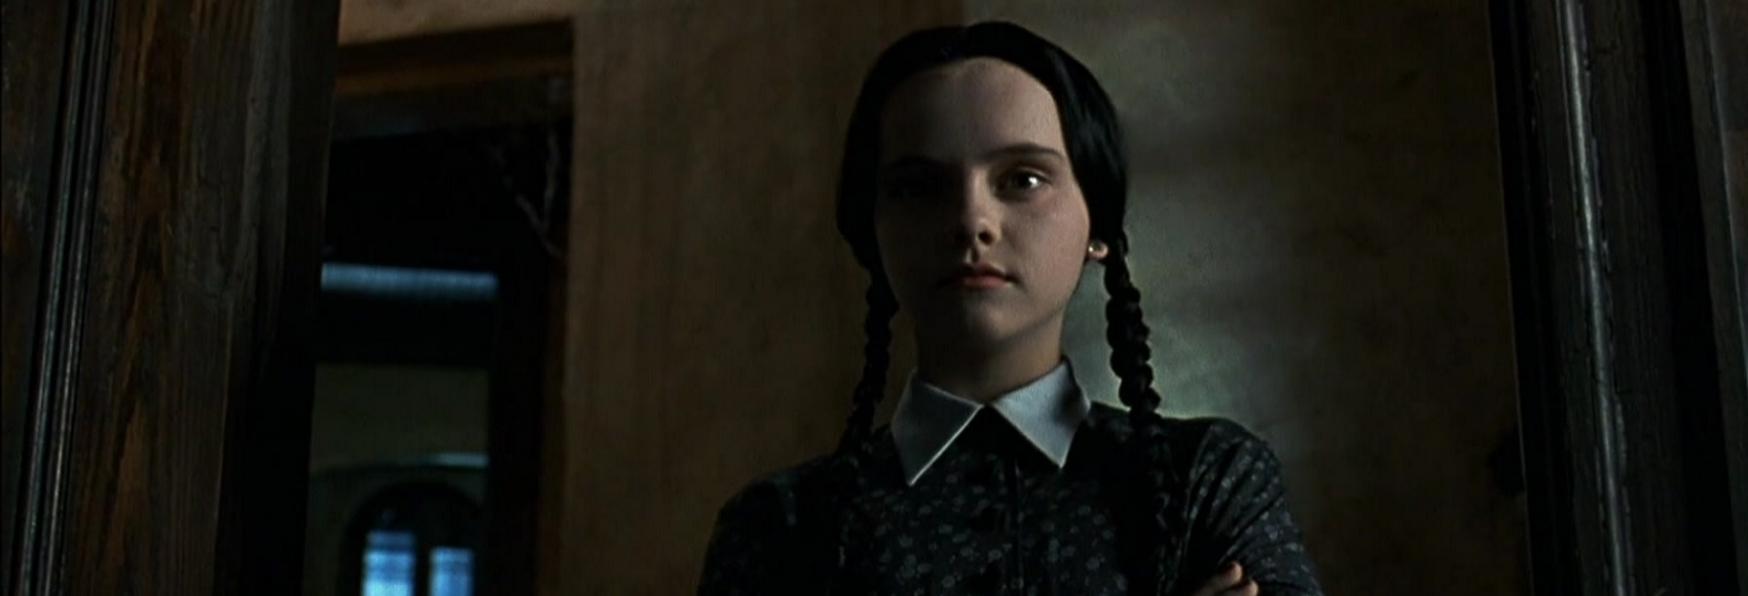 Wednesday: Netflix annuncia la nuova Serie TV Live-Action sulla Famiglia Addams